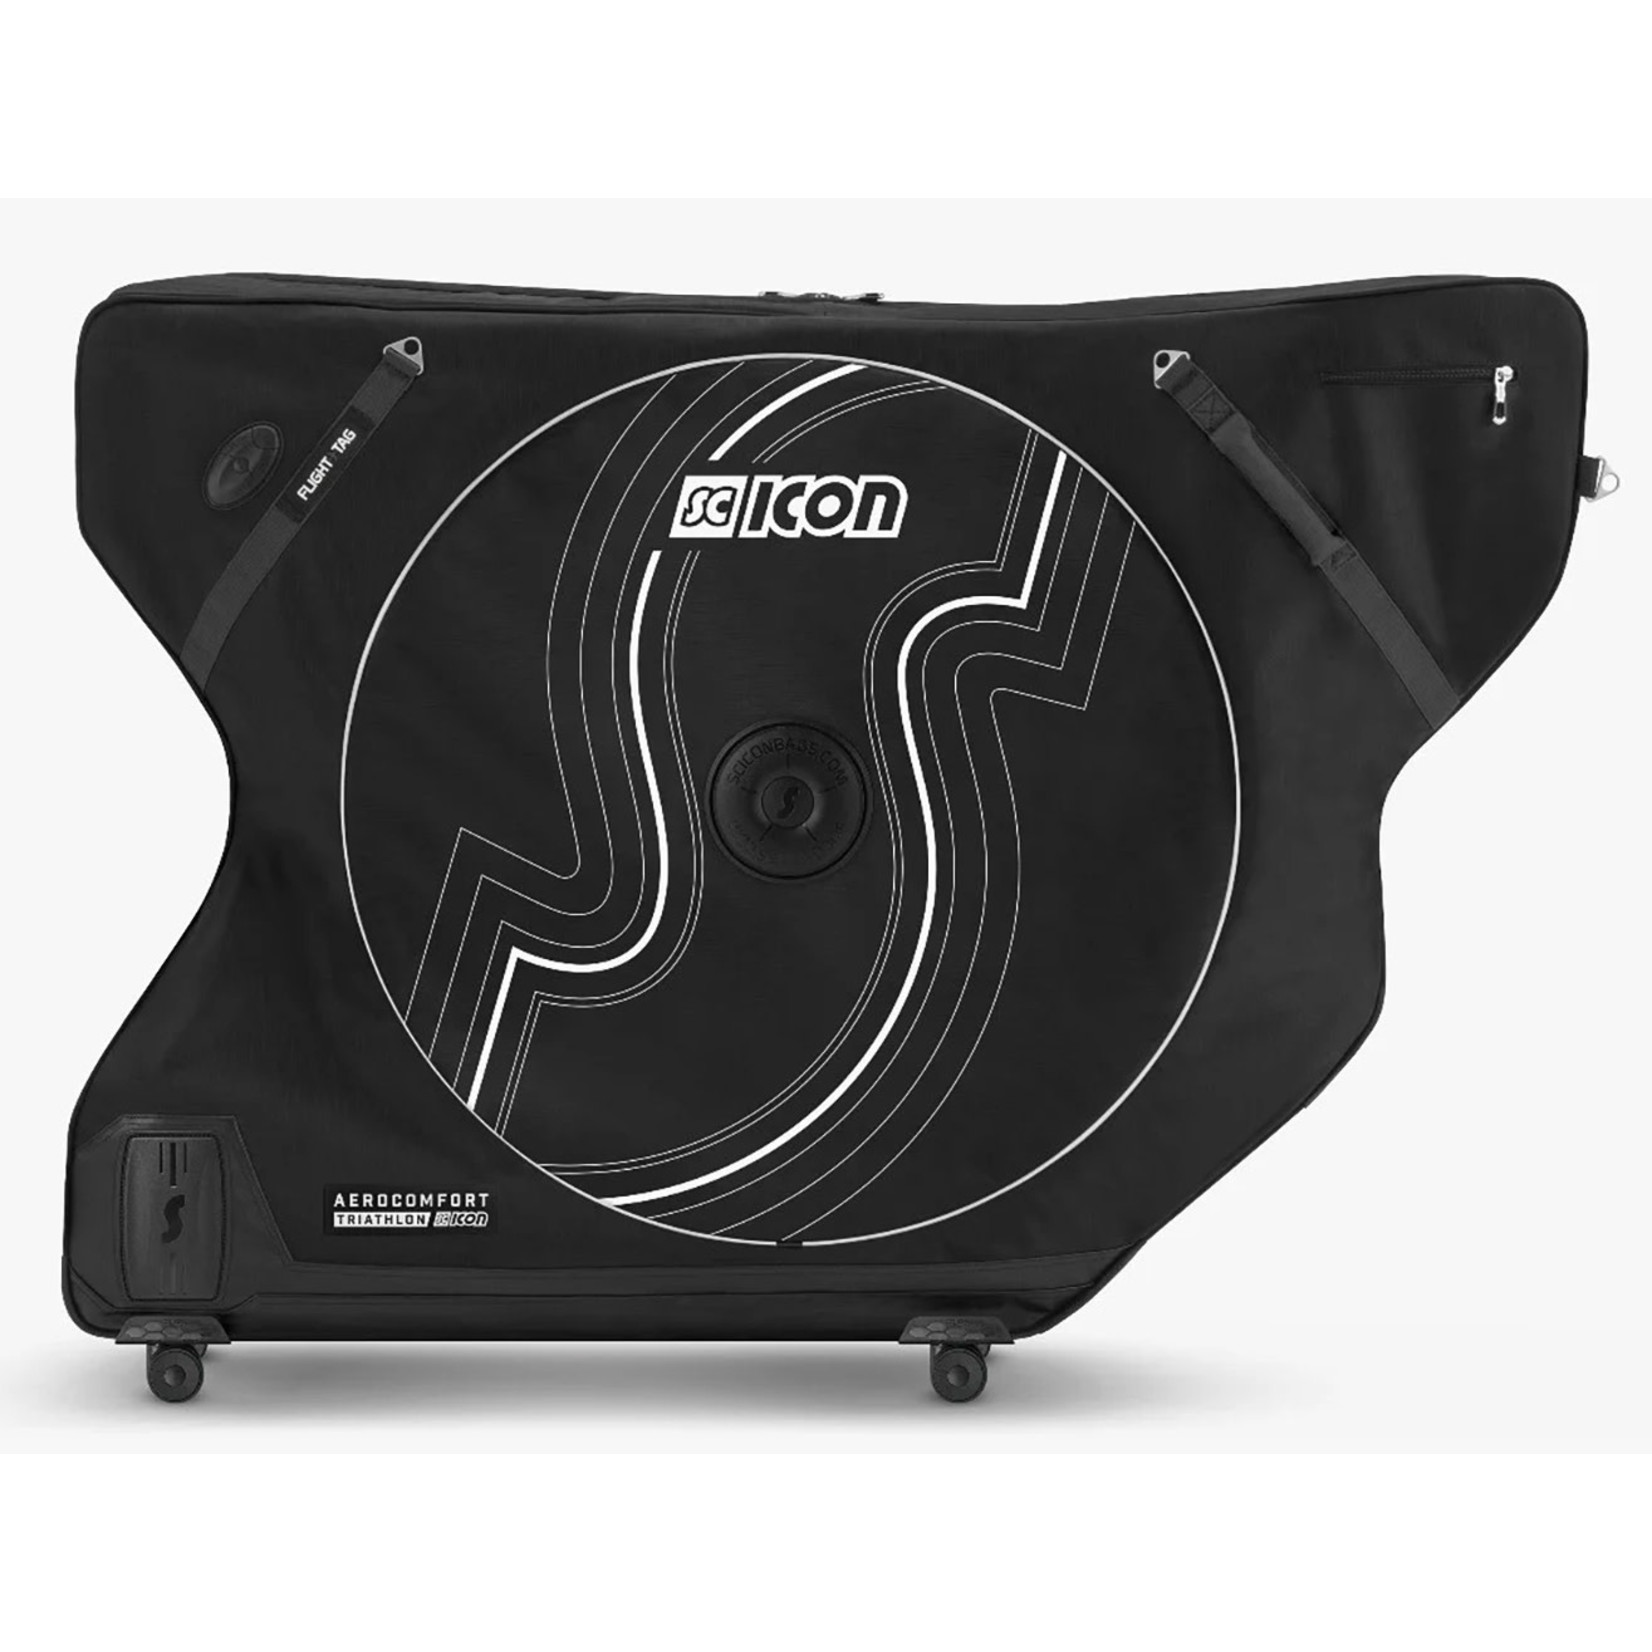 Scicon Sports Scicon AEROCOMFORT 3.0 TRIATHLON BIKE TRAVEL BAG